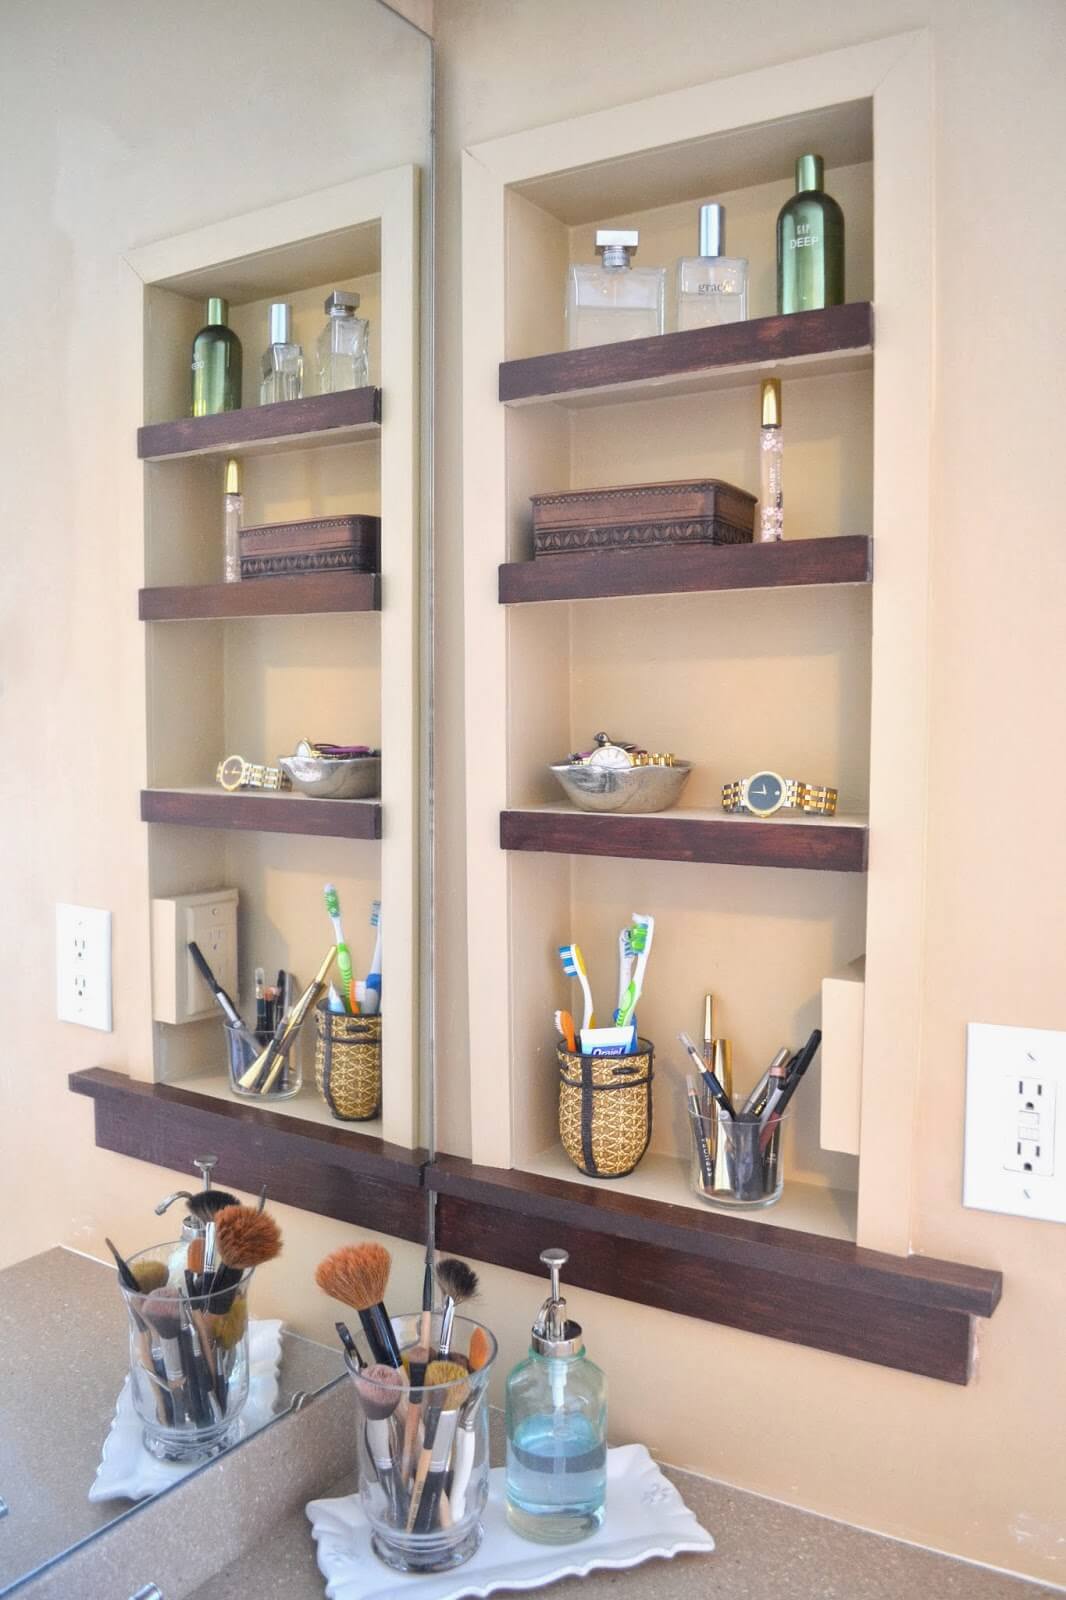 Wood Trimmed Inlaid Bathroom Unit - DIY Bathroom Shelves